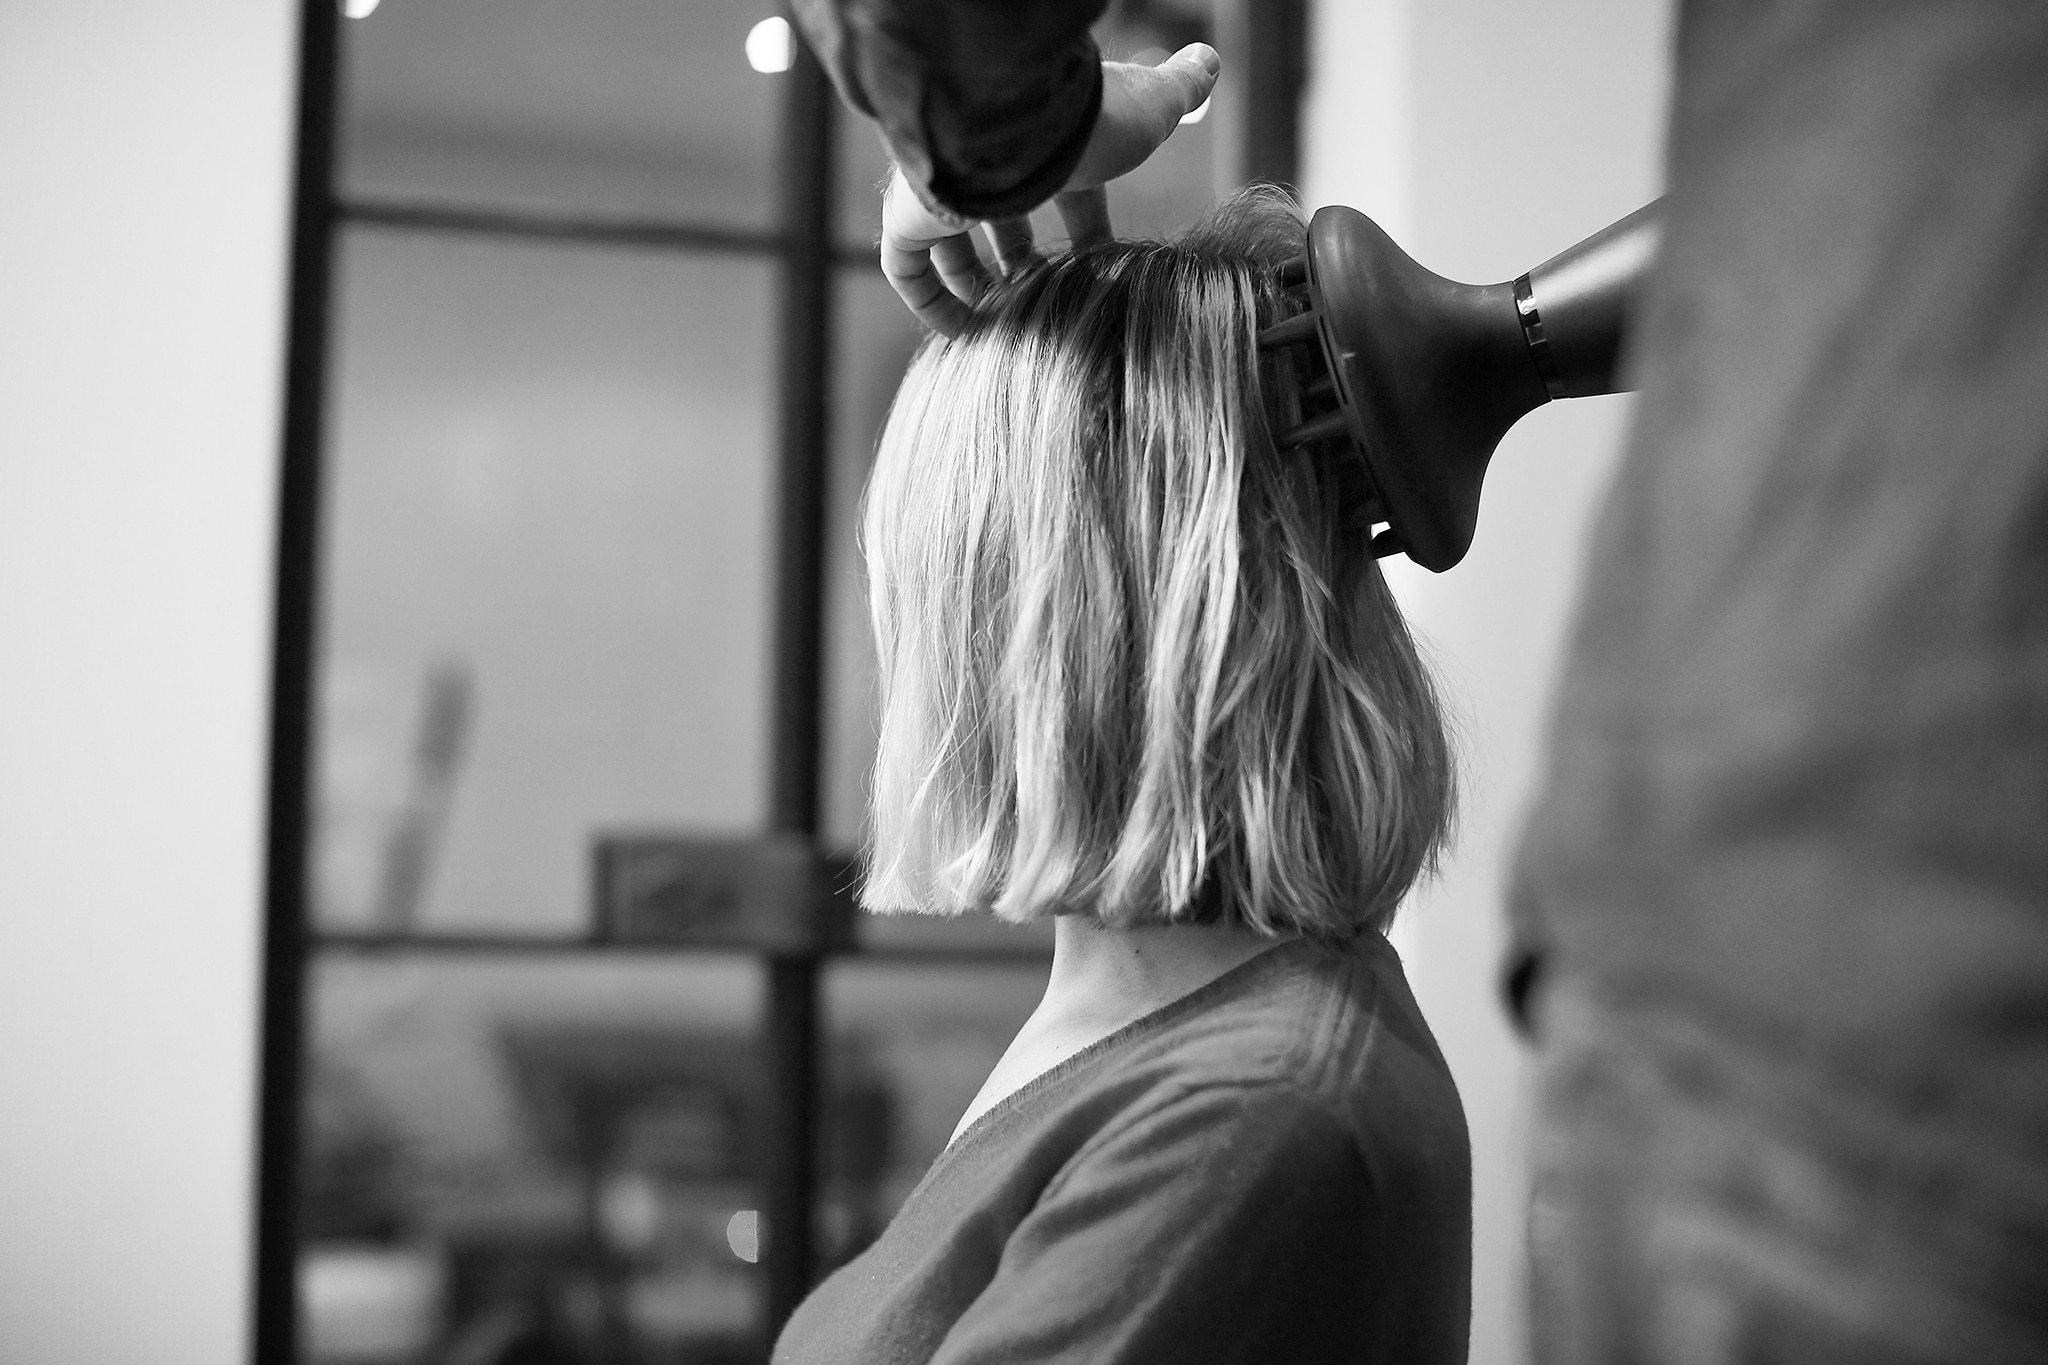 Projektantka Misha Nonoo w czasie stylizacji włosów przez fryzjera przy użyciu dyfuzora